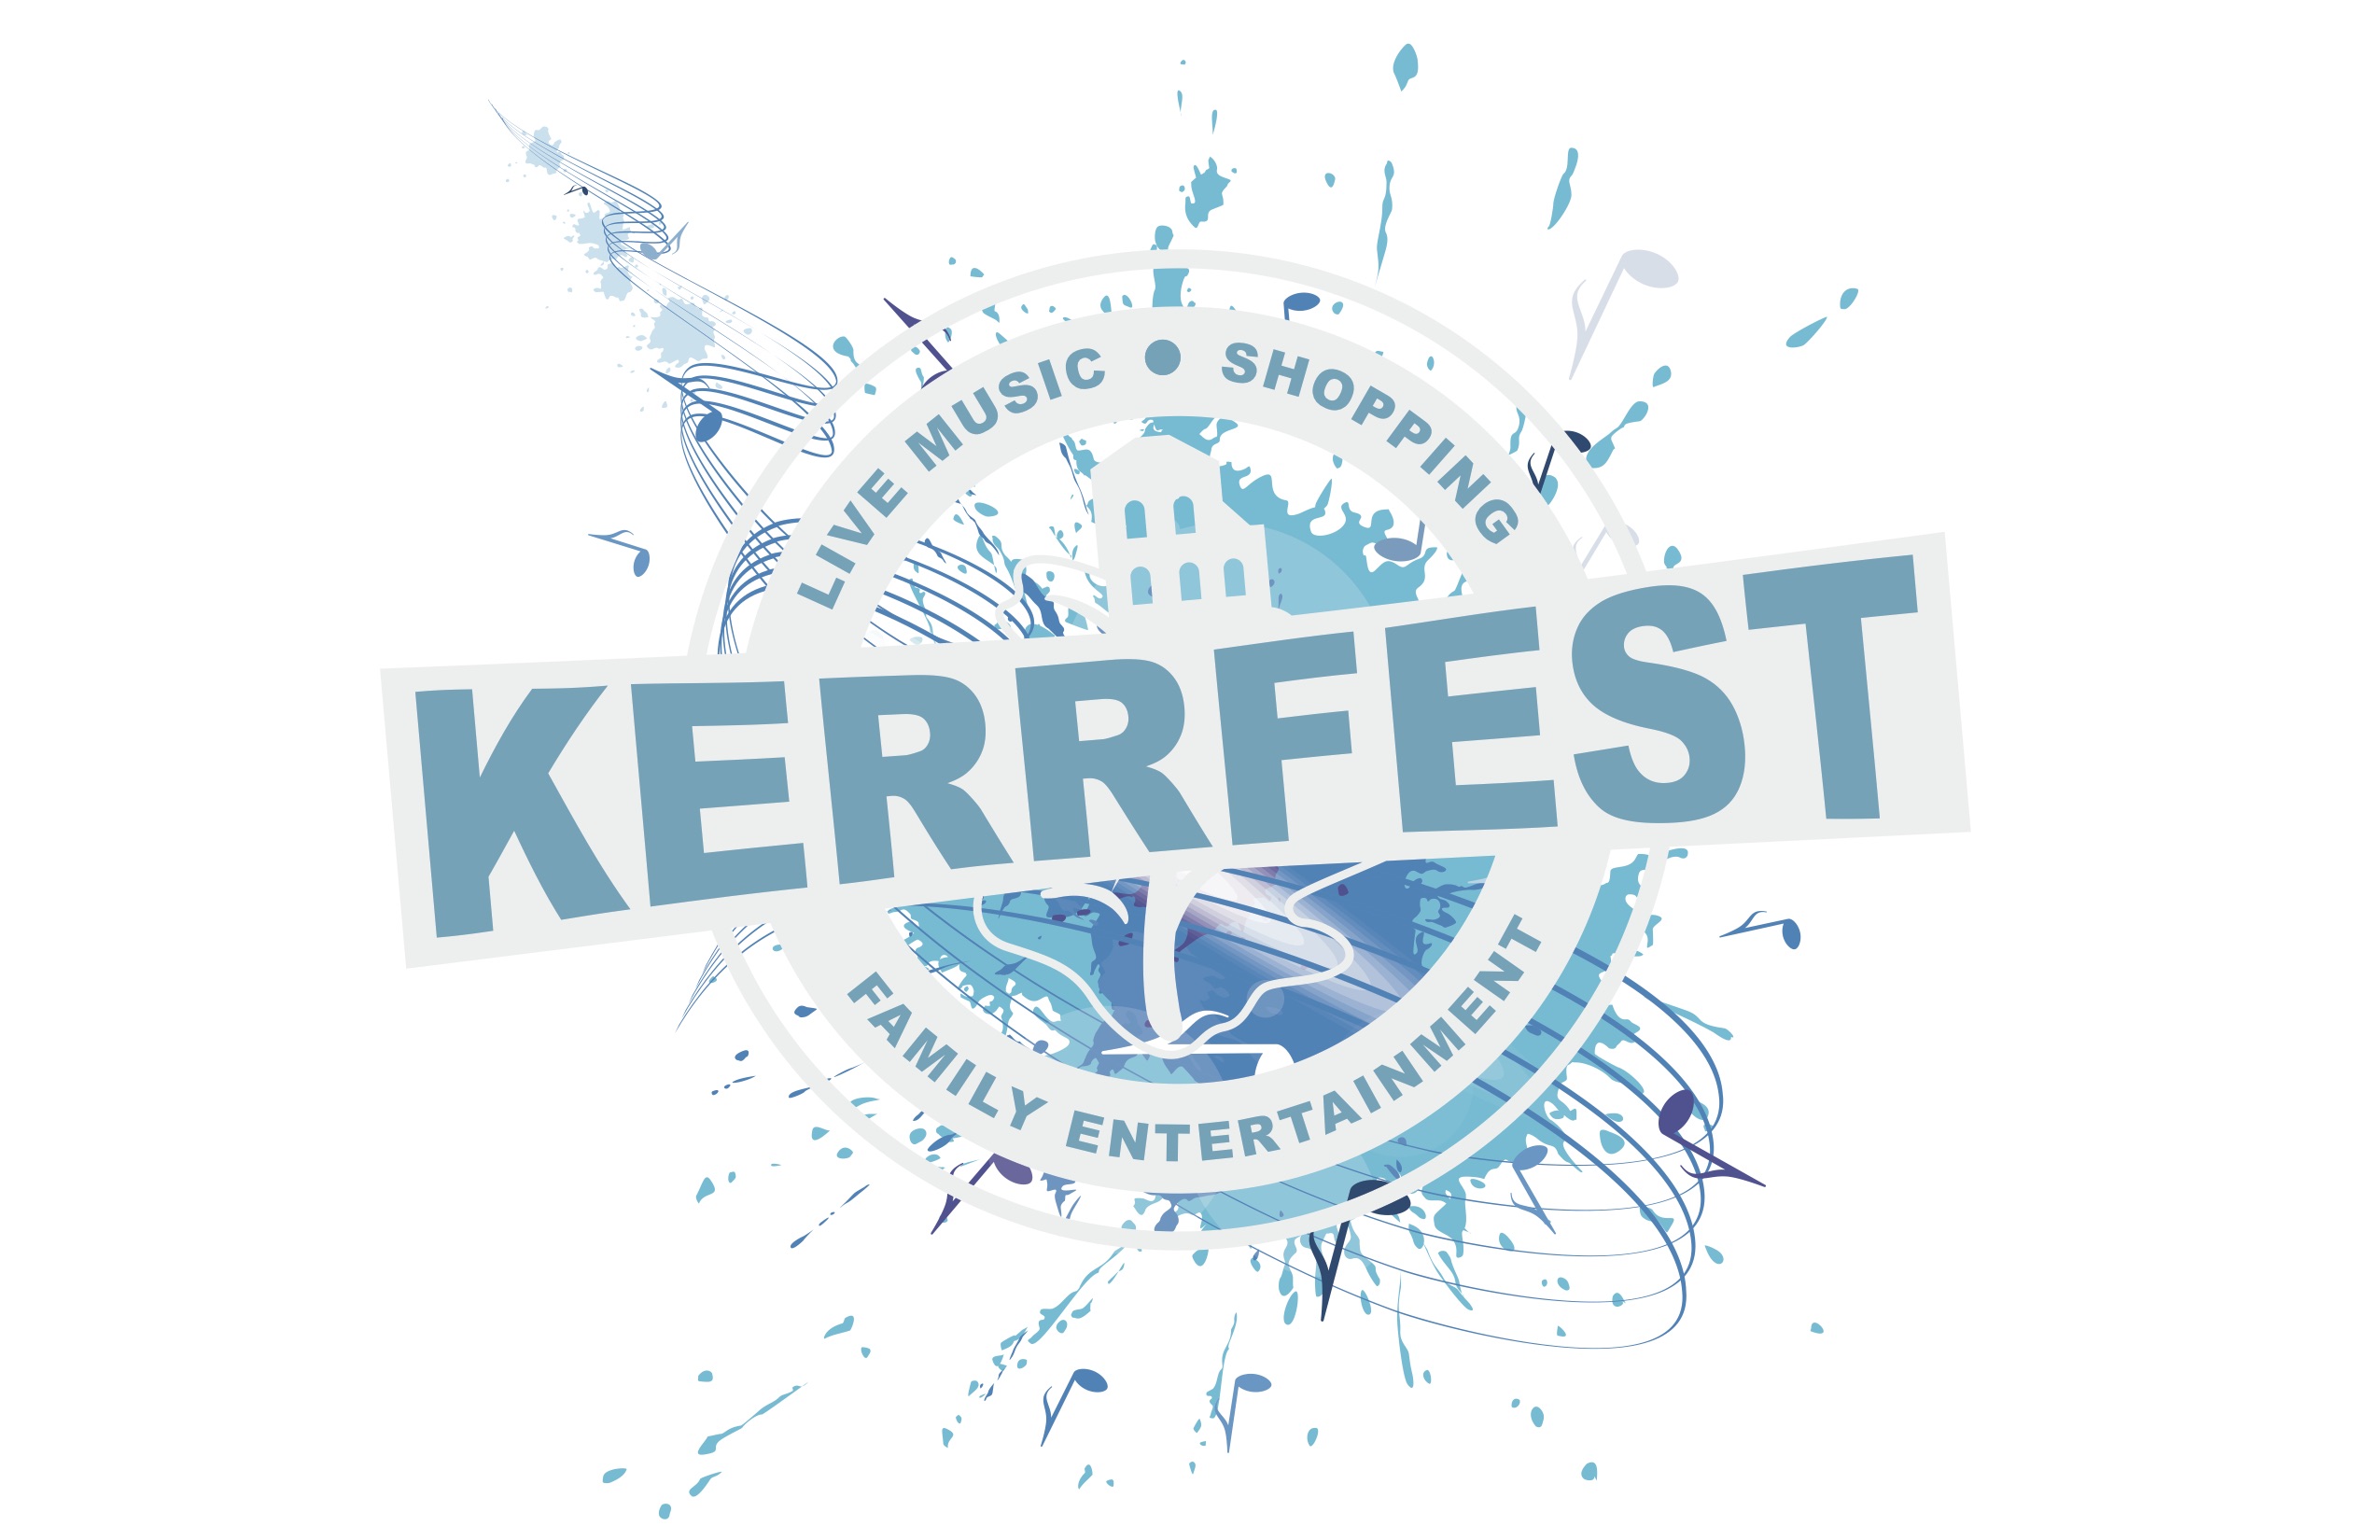 Kerrfest 2016 Announcement & Information